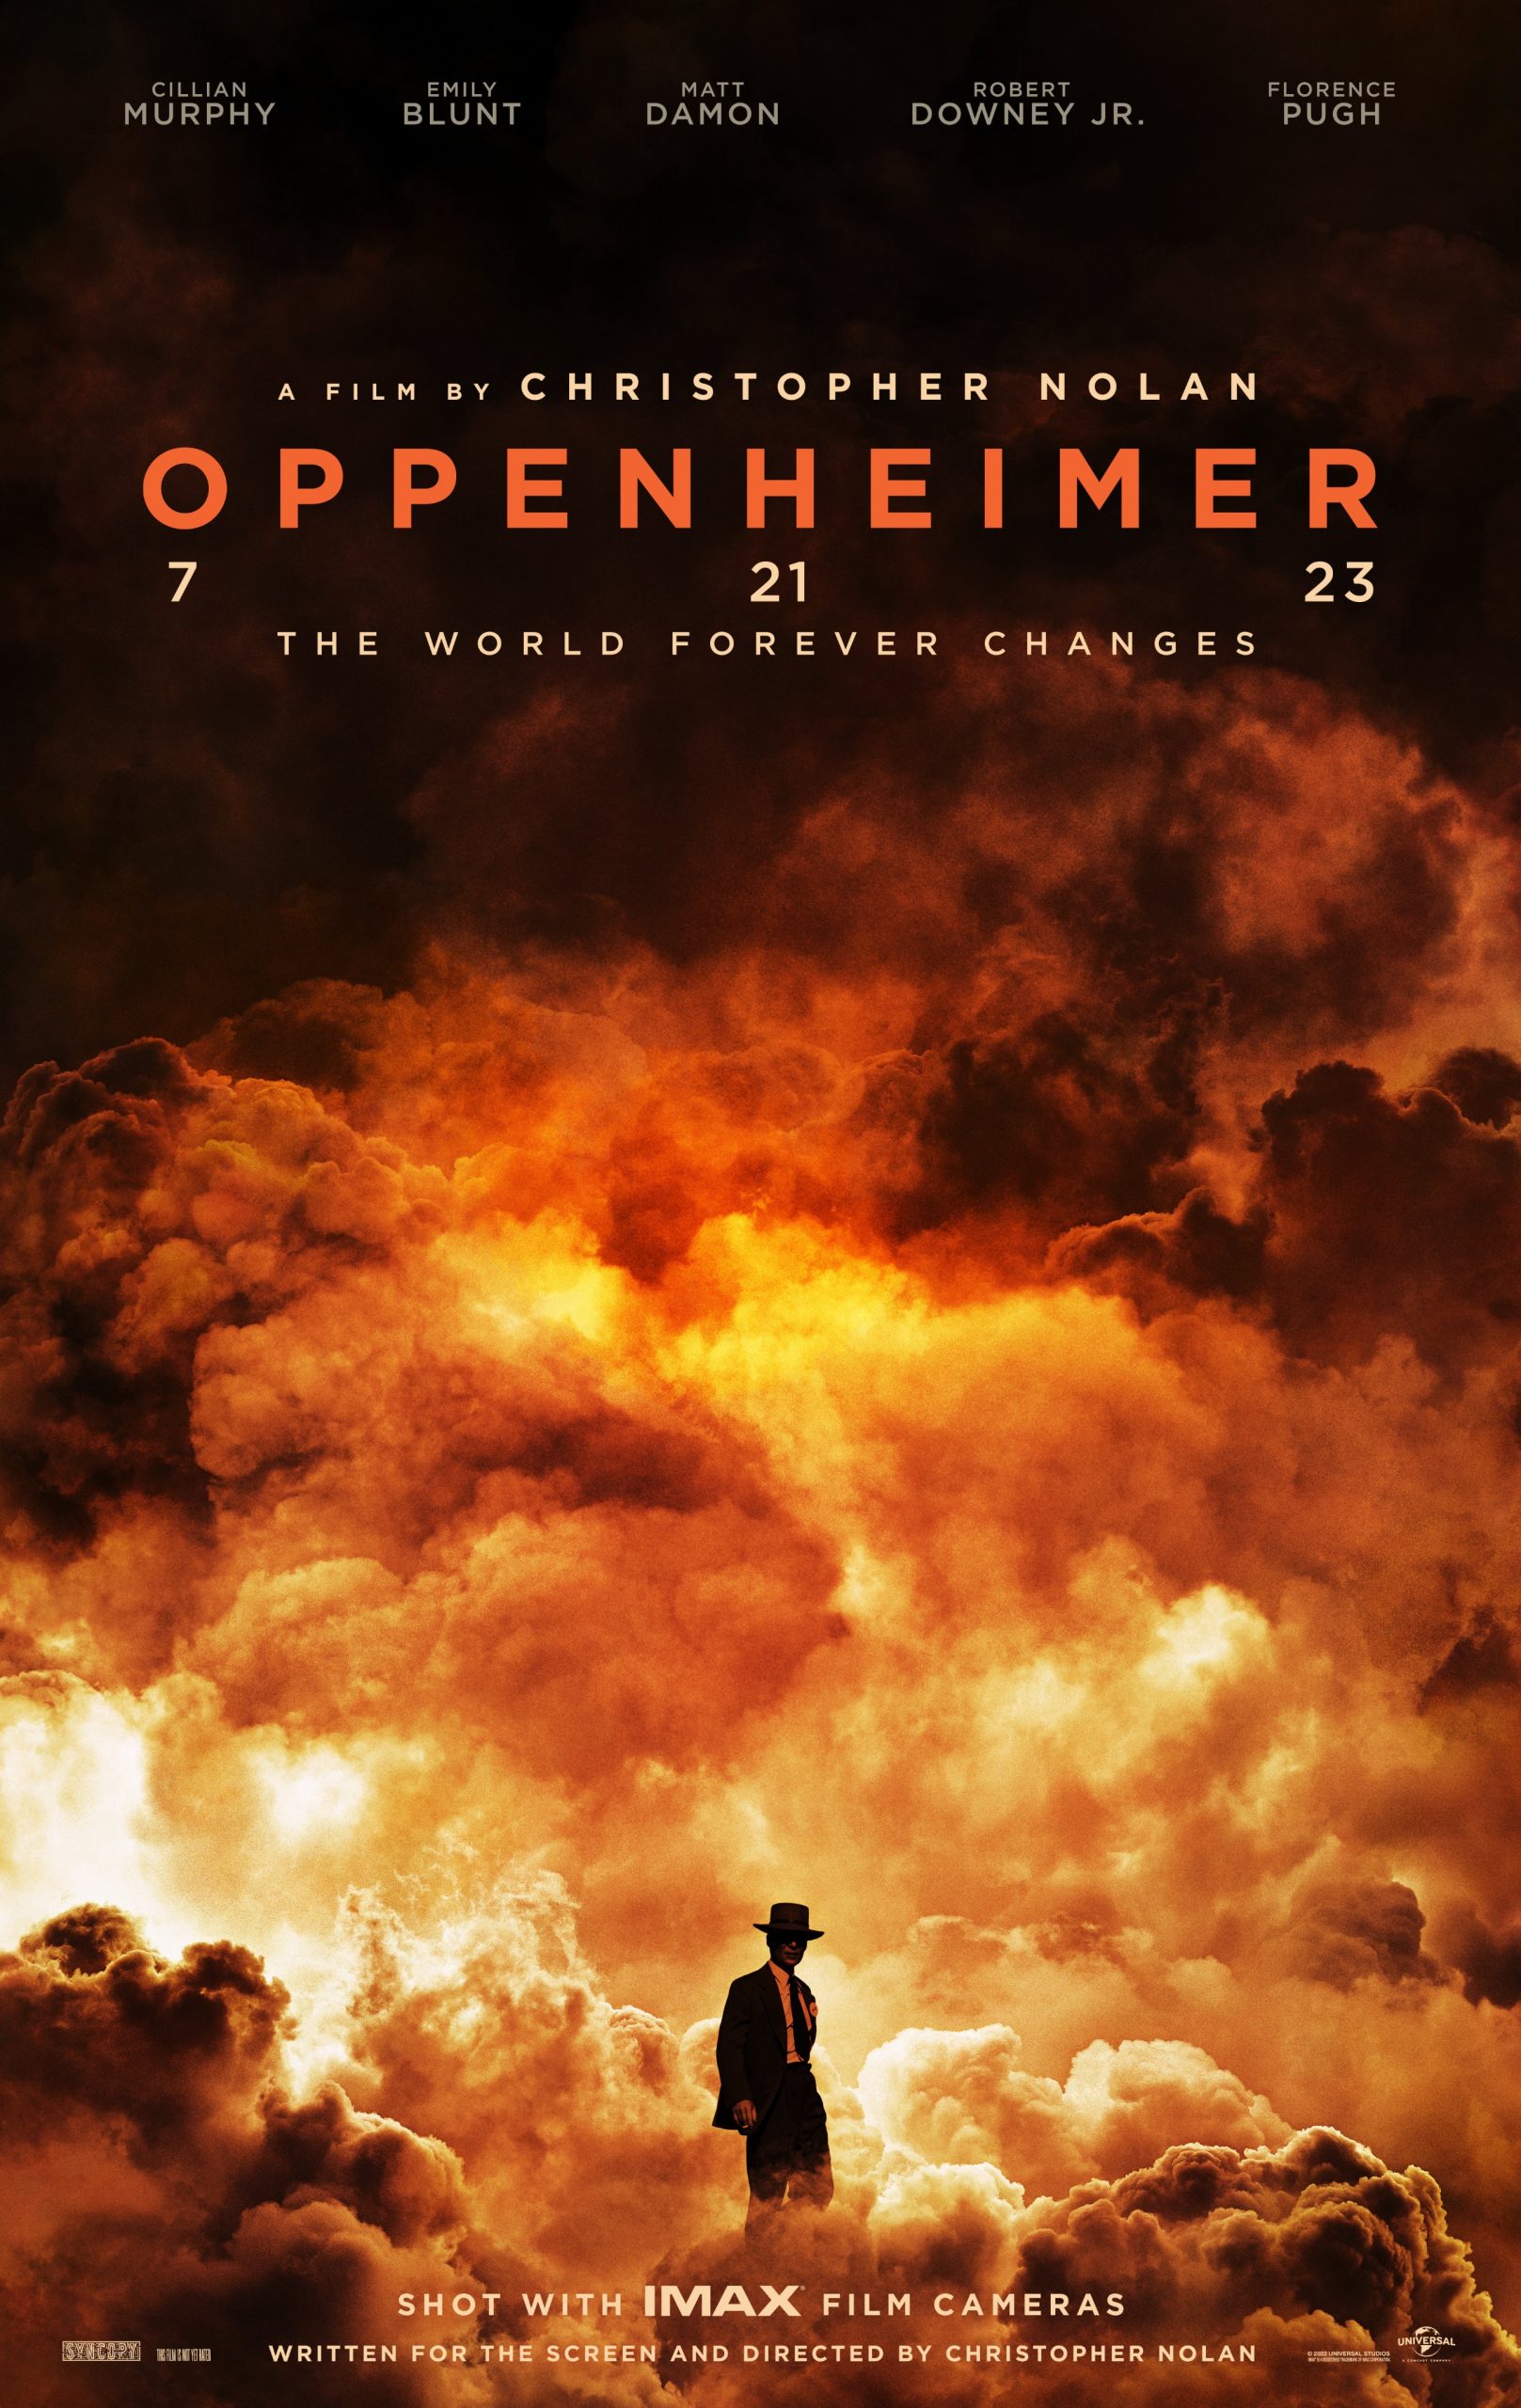 Christopher Nolan busca superar su trabajo en efectos especiales con técnicas apegadas a la realidad, esta vez con una bomba atómica.   